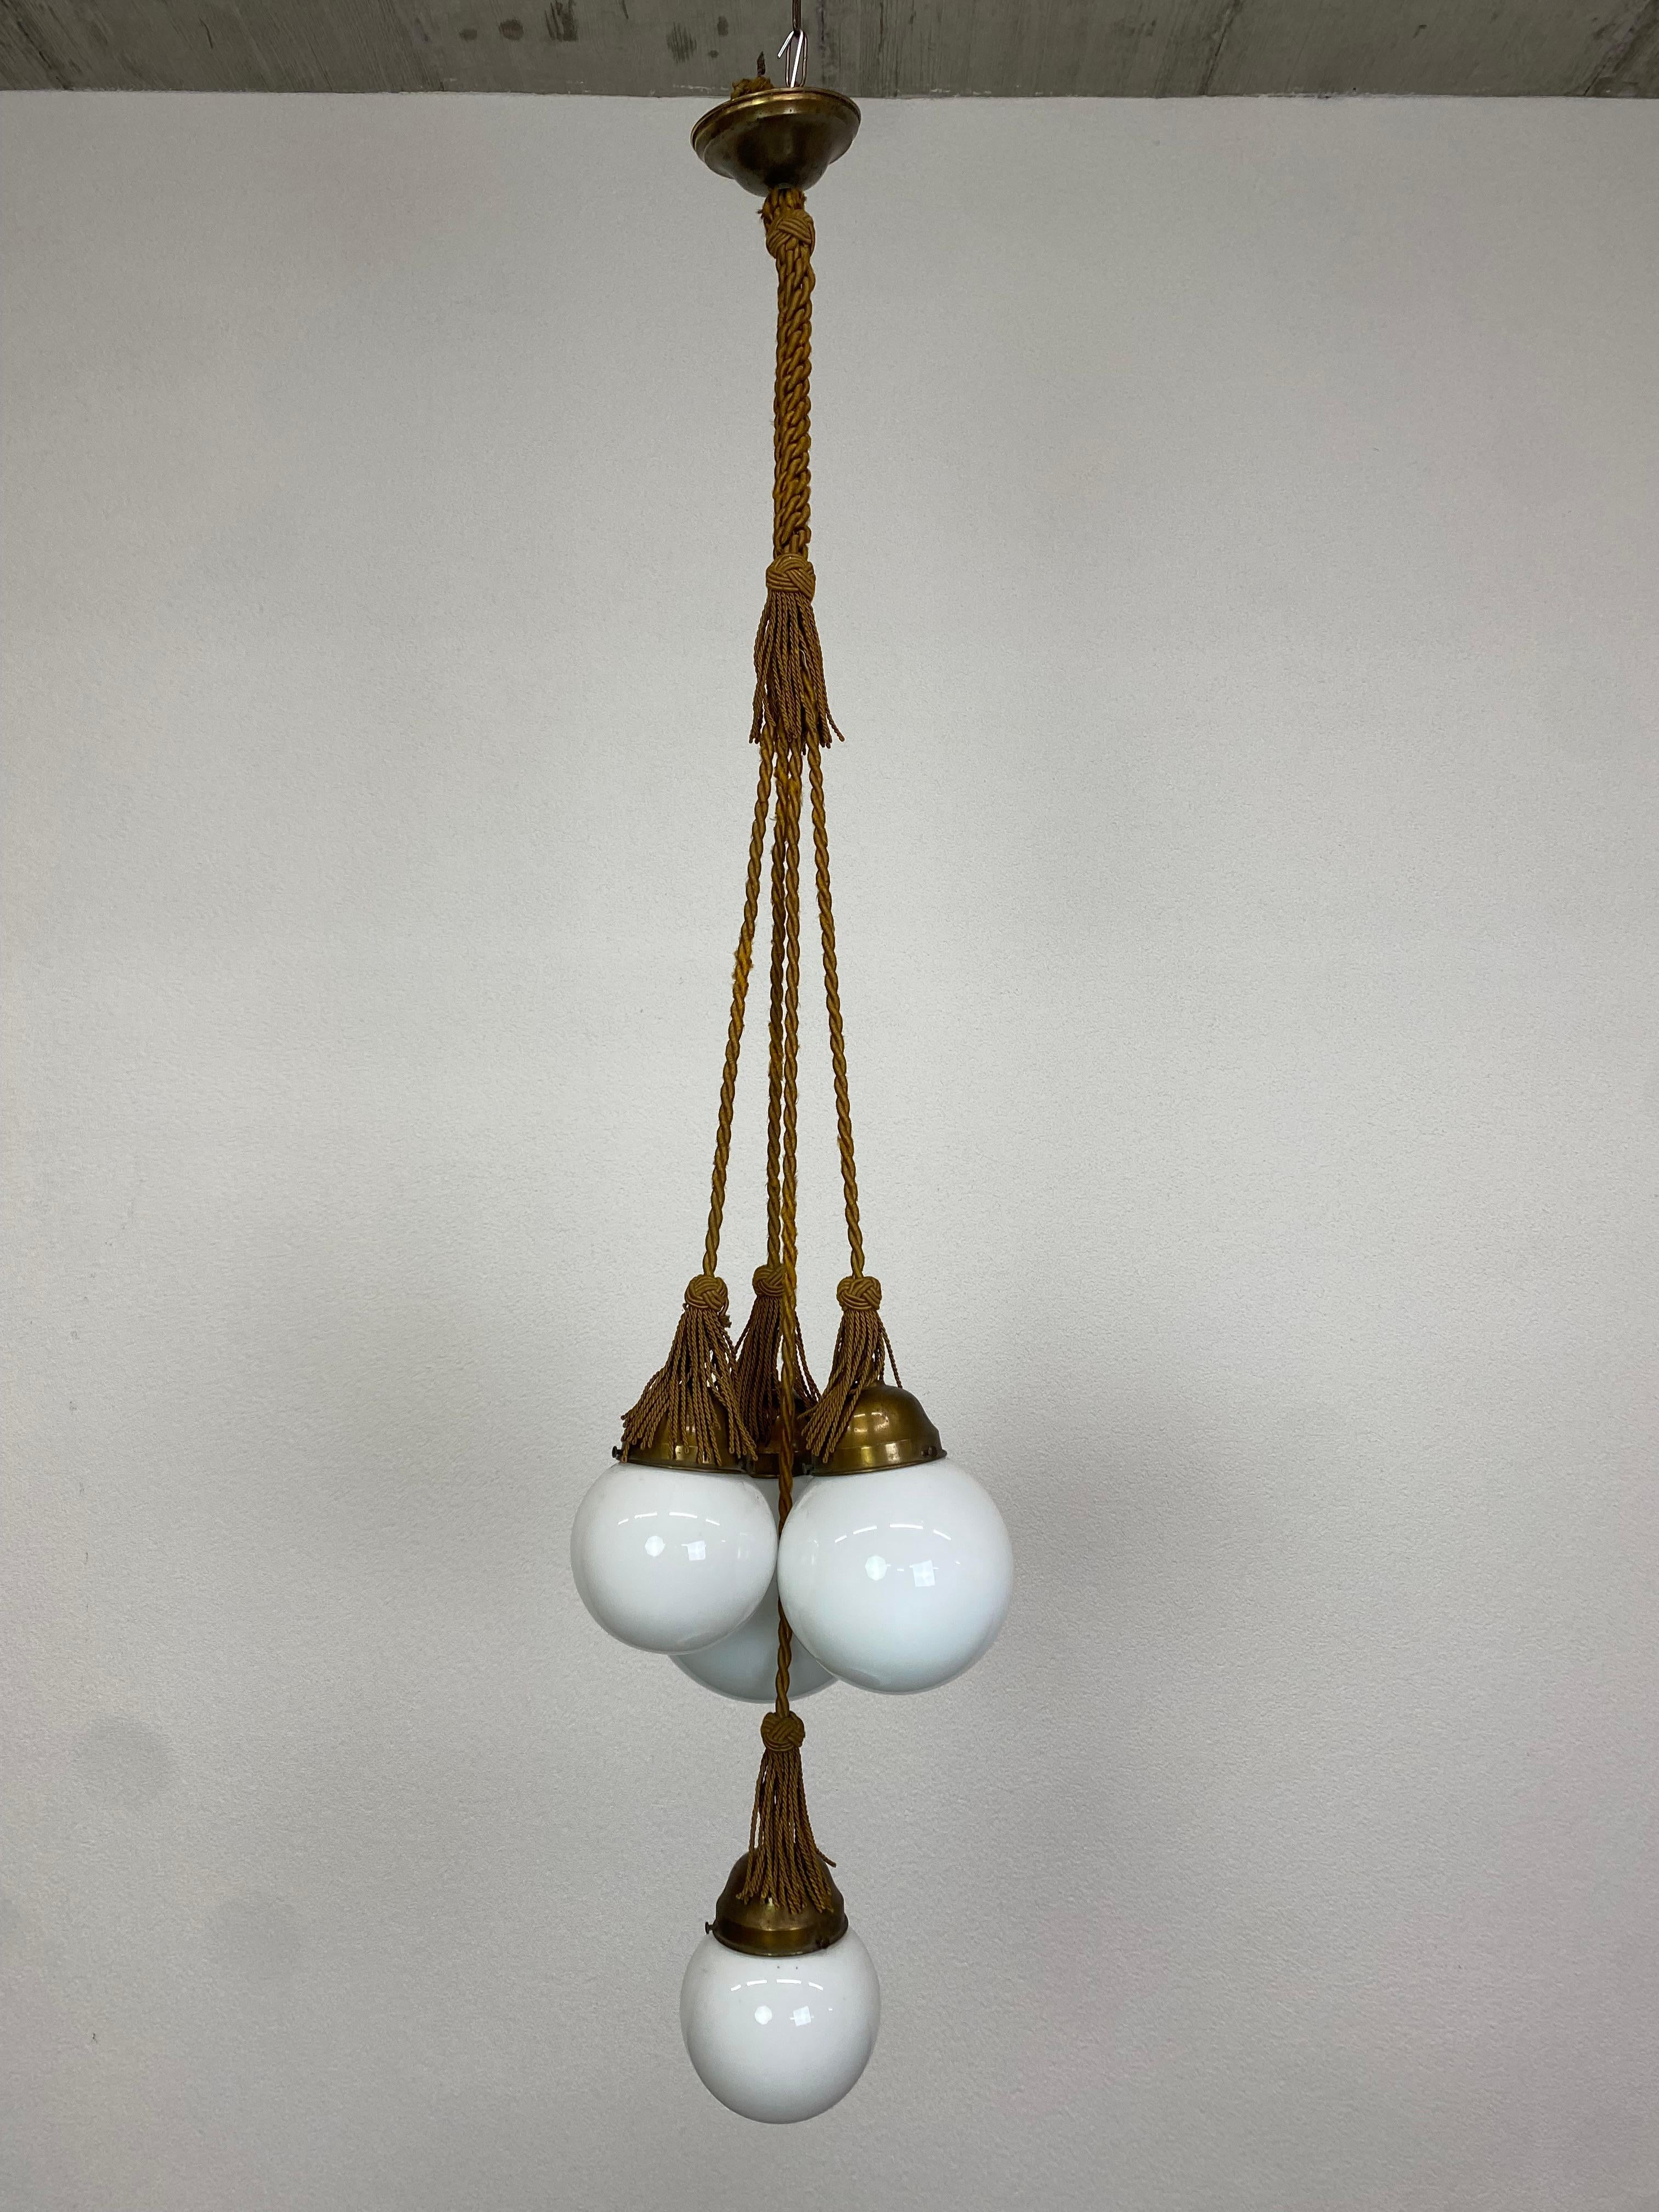 Art deco hanging lamp.